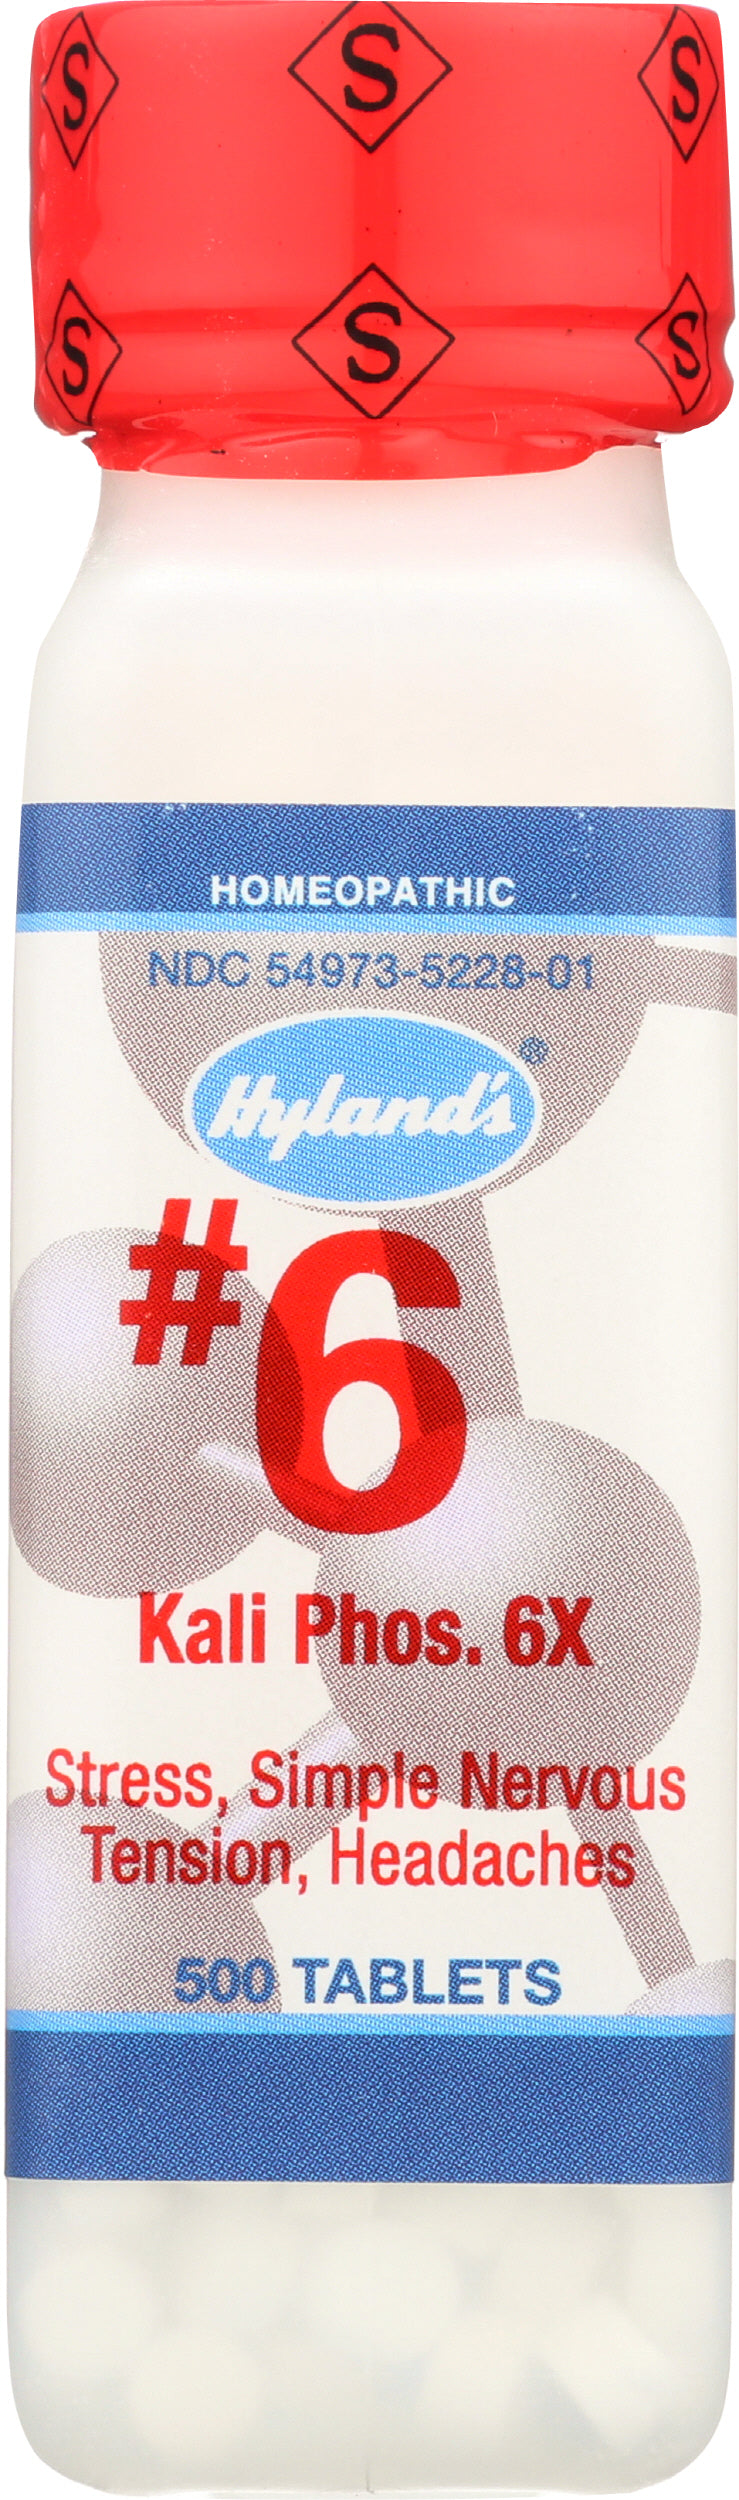 Hyland's #6 Kali Phos. 6X 500 Tablets Front